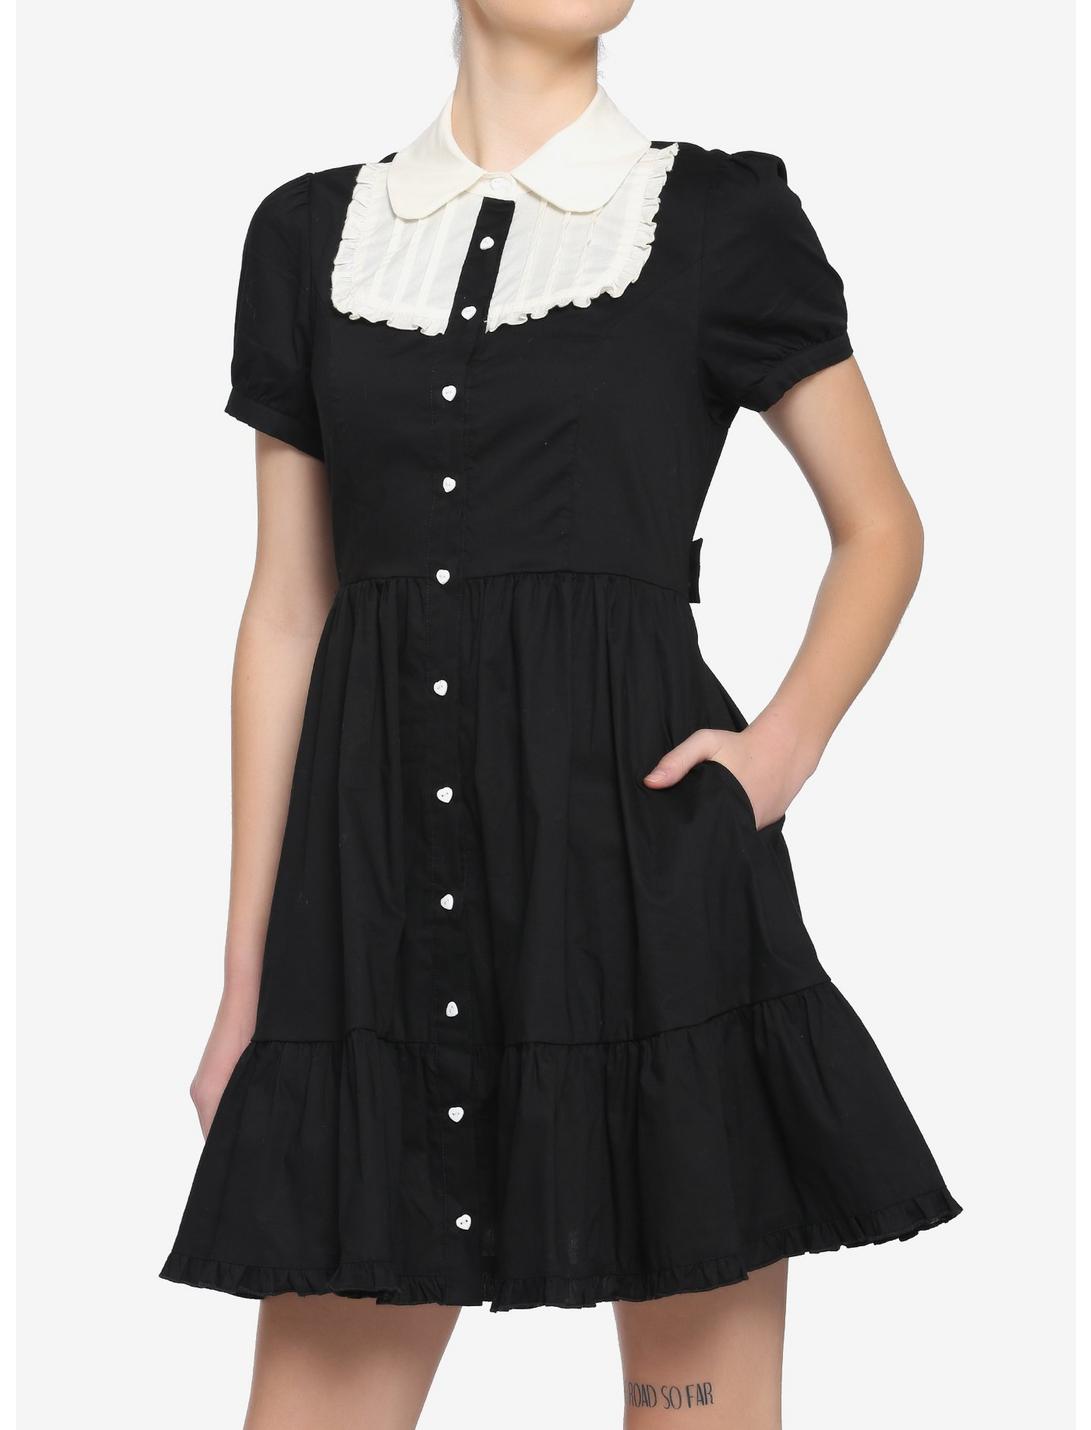 Black & White Peter Pan Collar Dress, BLACK, hi-res